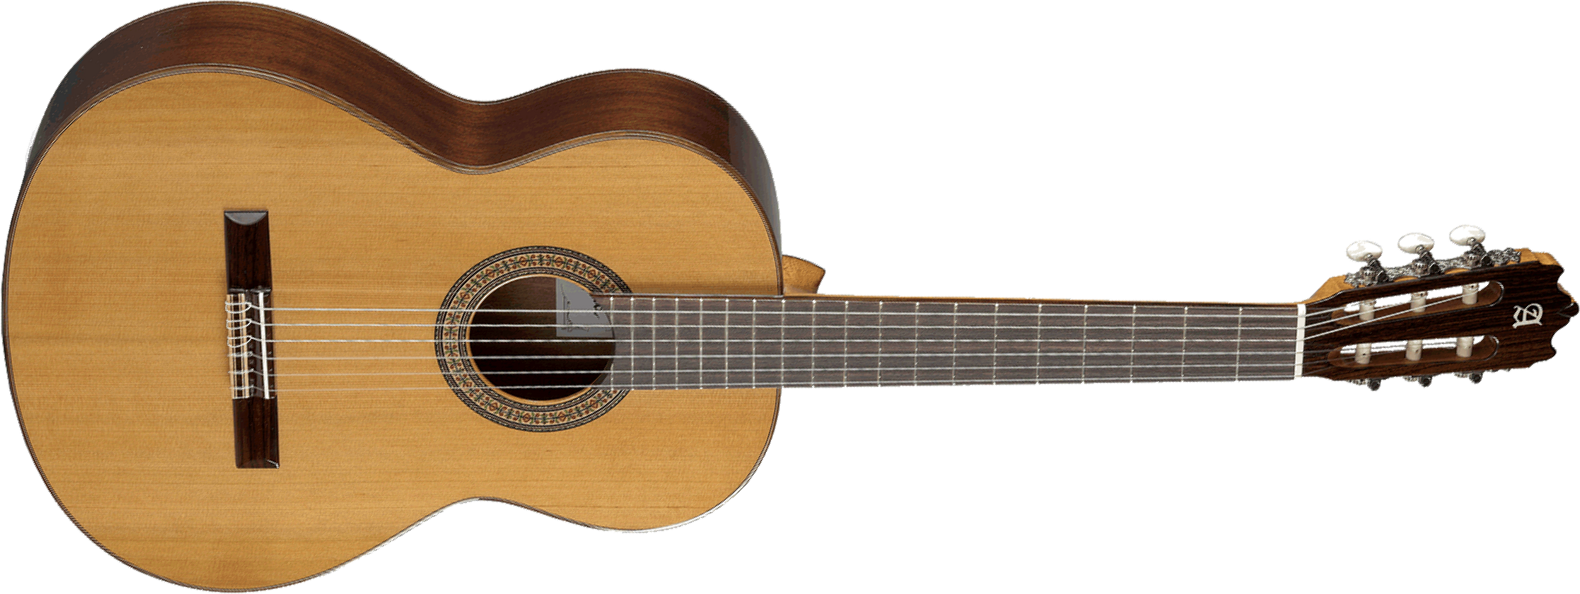 Alhambra 3c Cedre Sapele Rw - Natural - Klassieke gitaar 4/4 - Main picture